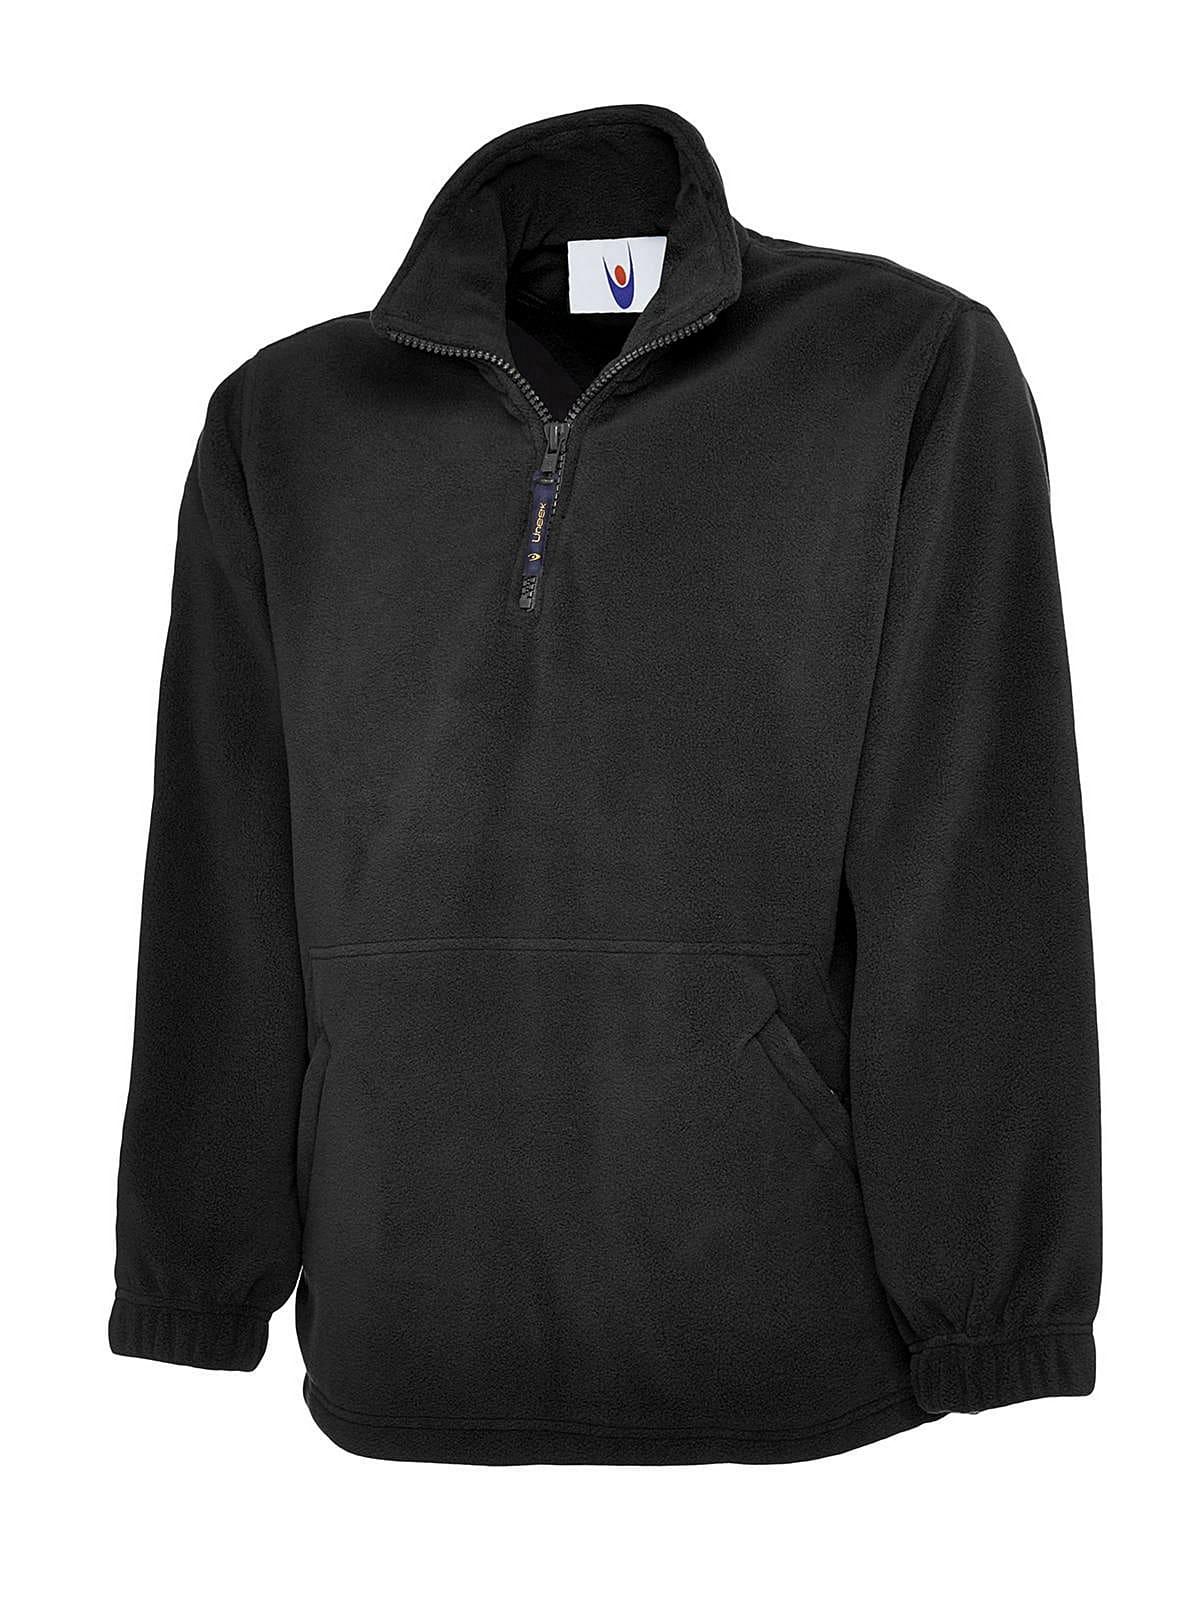 Uneek 380GSM Premium 1/4 Zip Micro Fleece Jacket | UC602 | Workwear ...